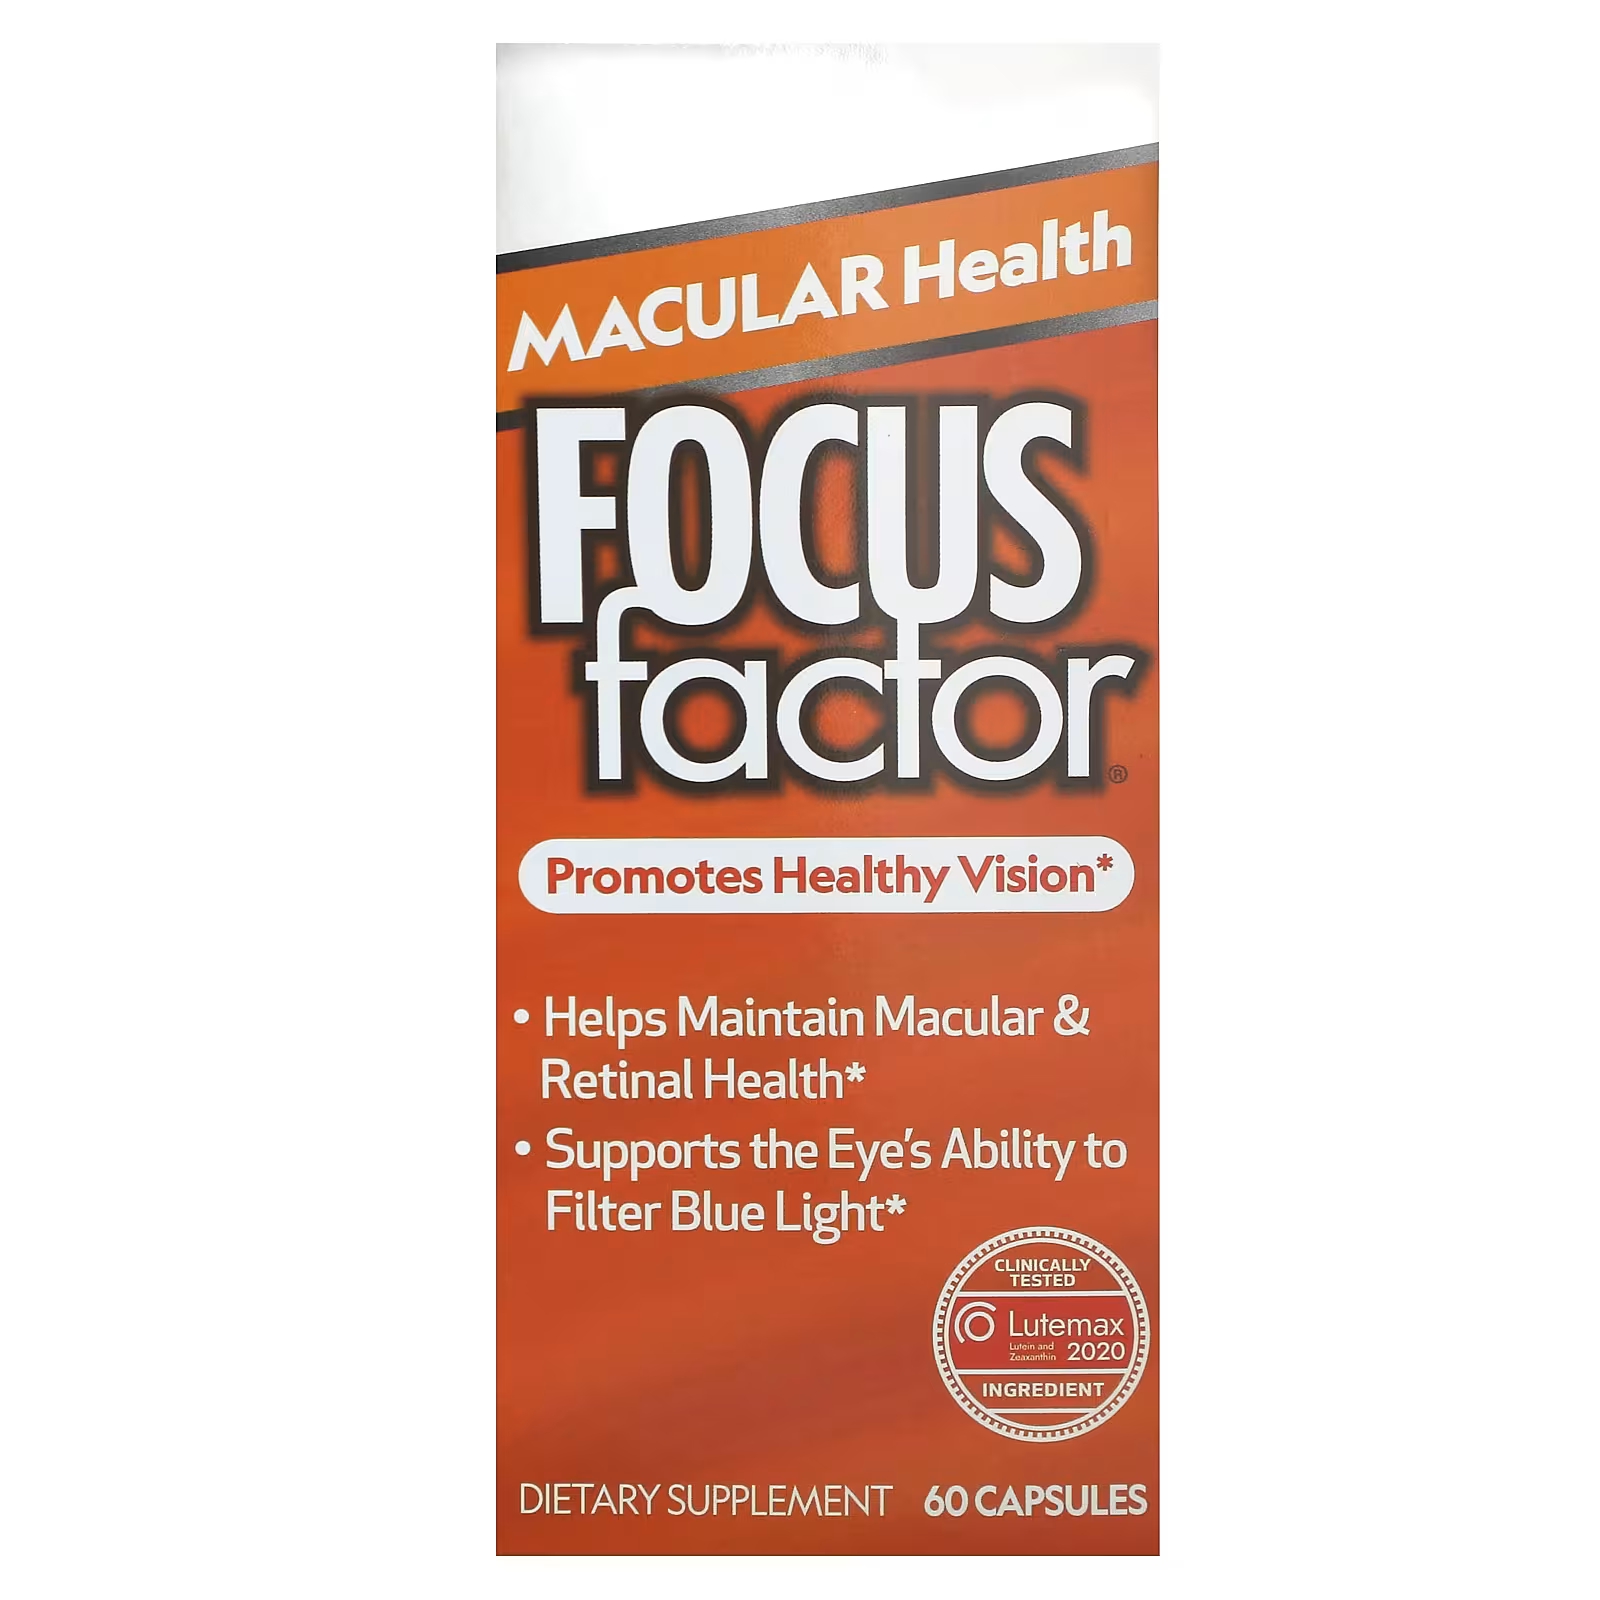 Focus Factor Macular Health 60 капсул средство для здоровья глаз force factor complete eye health усовершенствованная формула витаминов и минералов 60 капсул